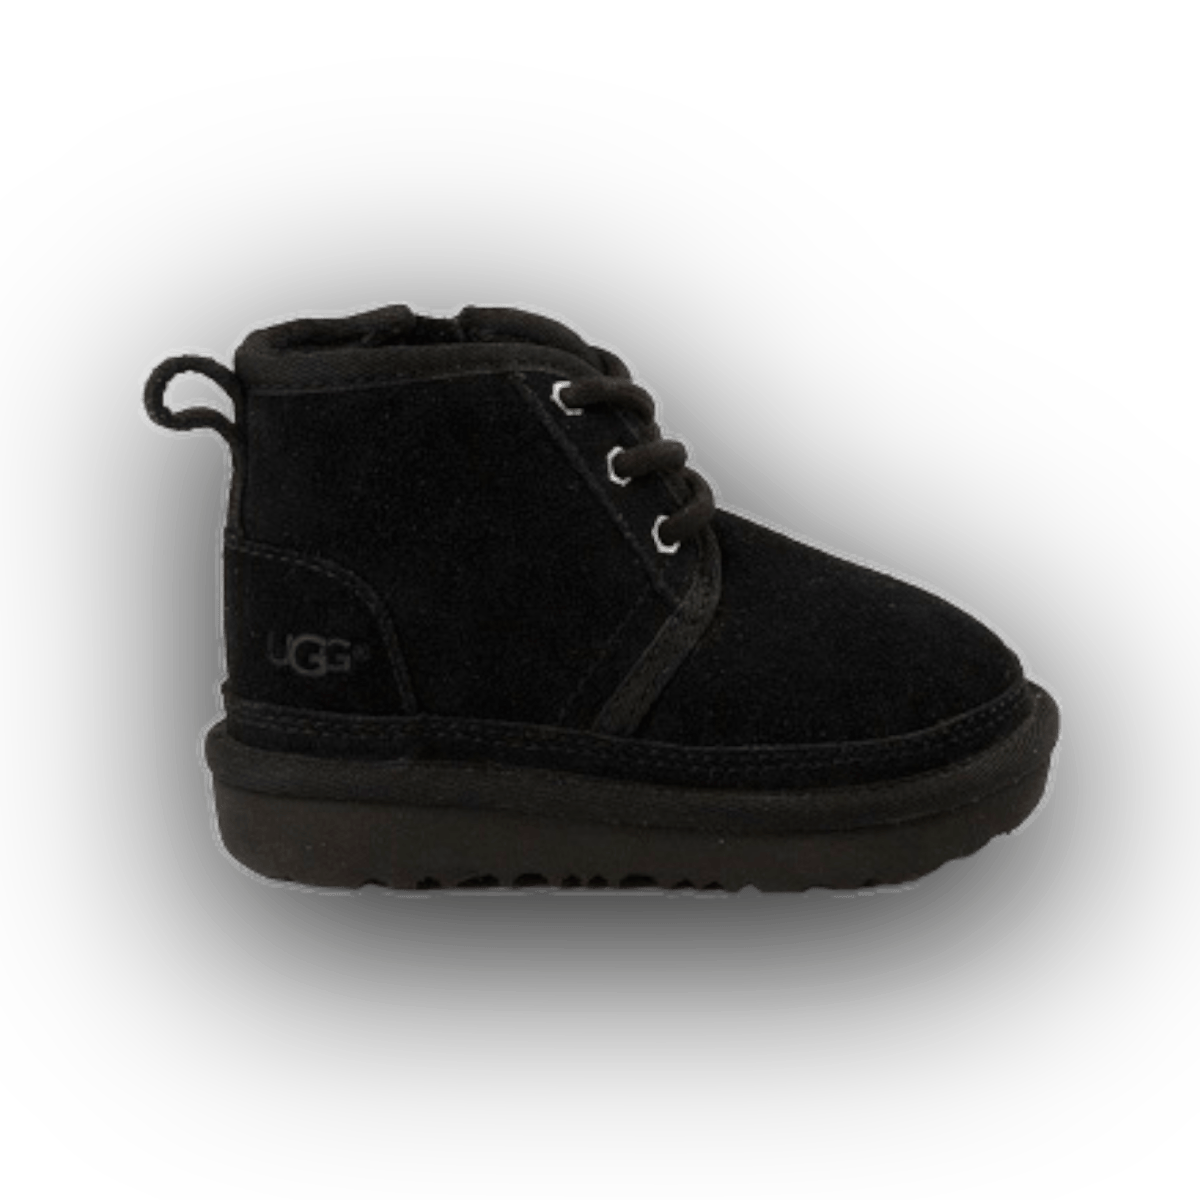 UGG Neumel II Chukka Crib Bootie - Toddler - Low Sneaker - Jawns on Fire Sneakers & Streetwear